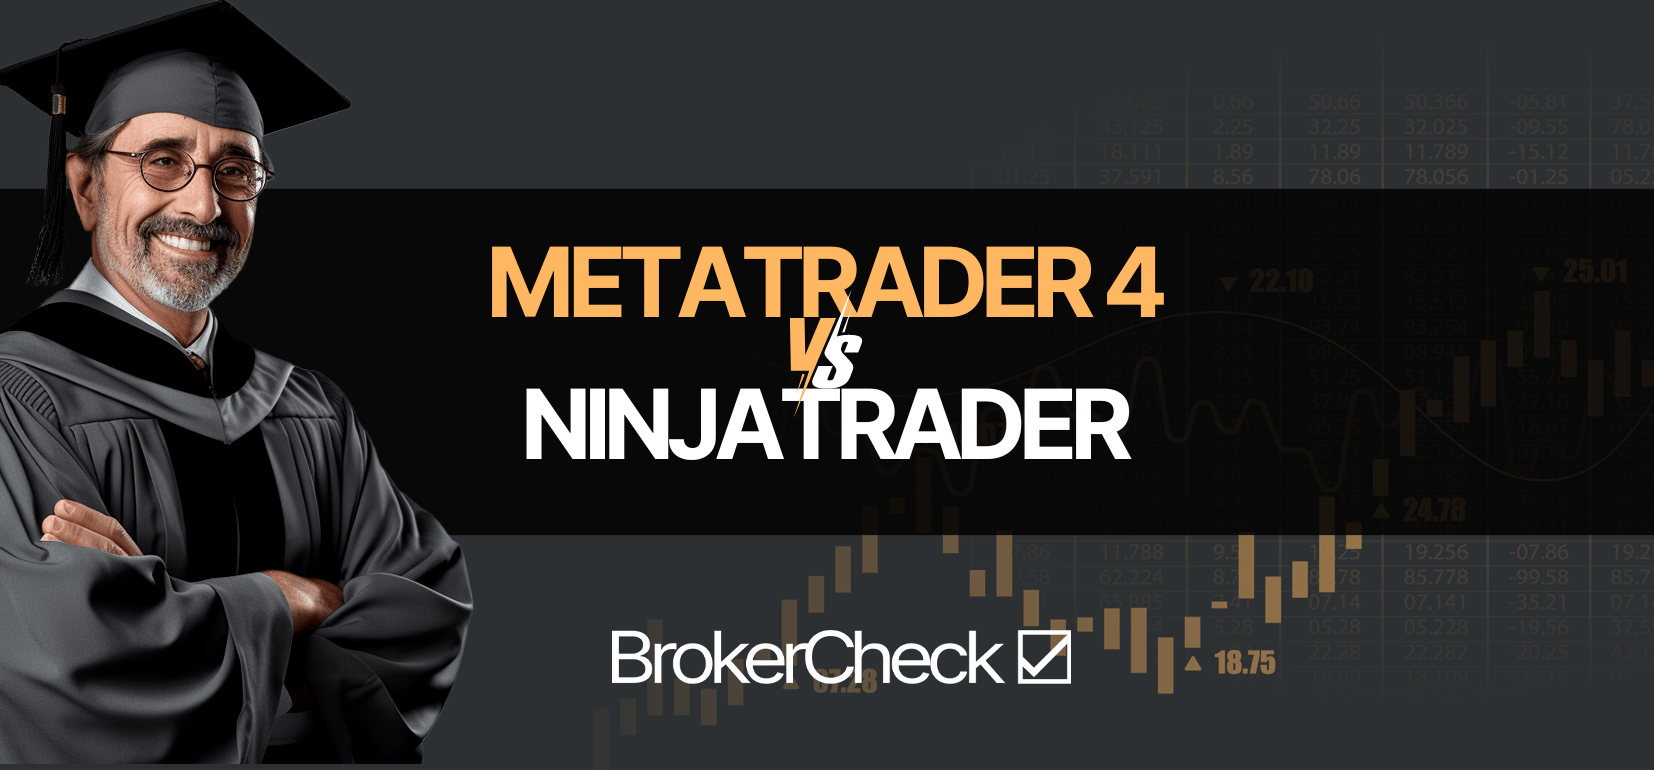 MetaTrader 4 contre NinjaTrader